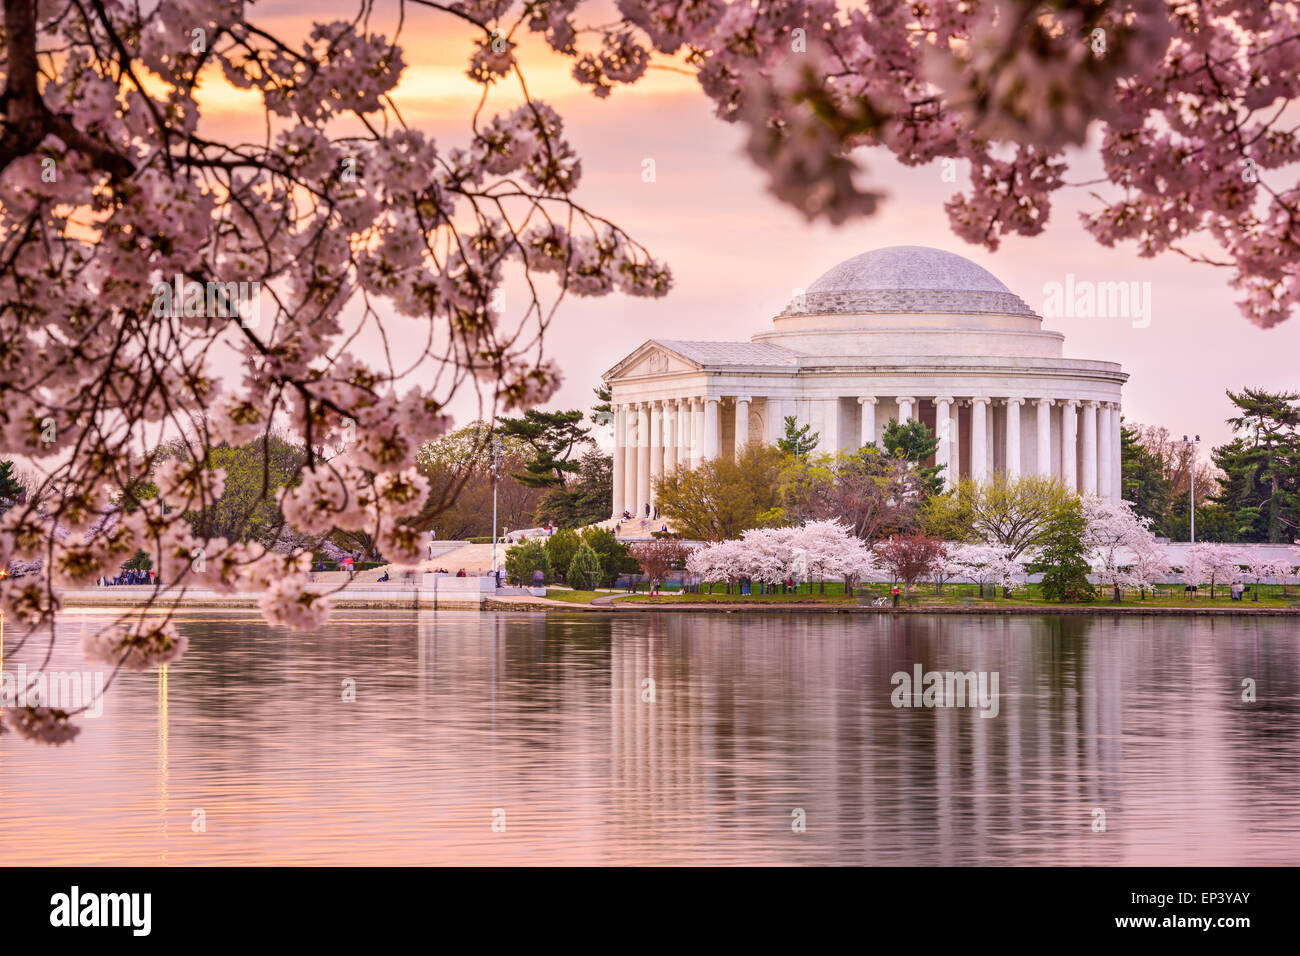 Washington, DC, en el Tidal Basin y el Jefferson Memorial durante la primavera. Foto de stock